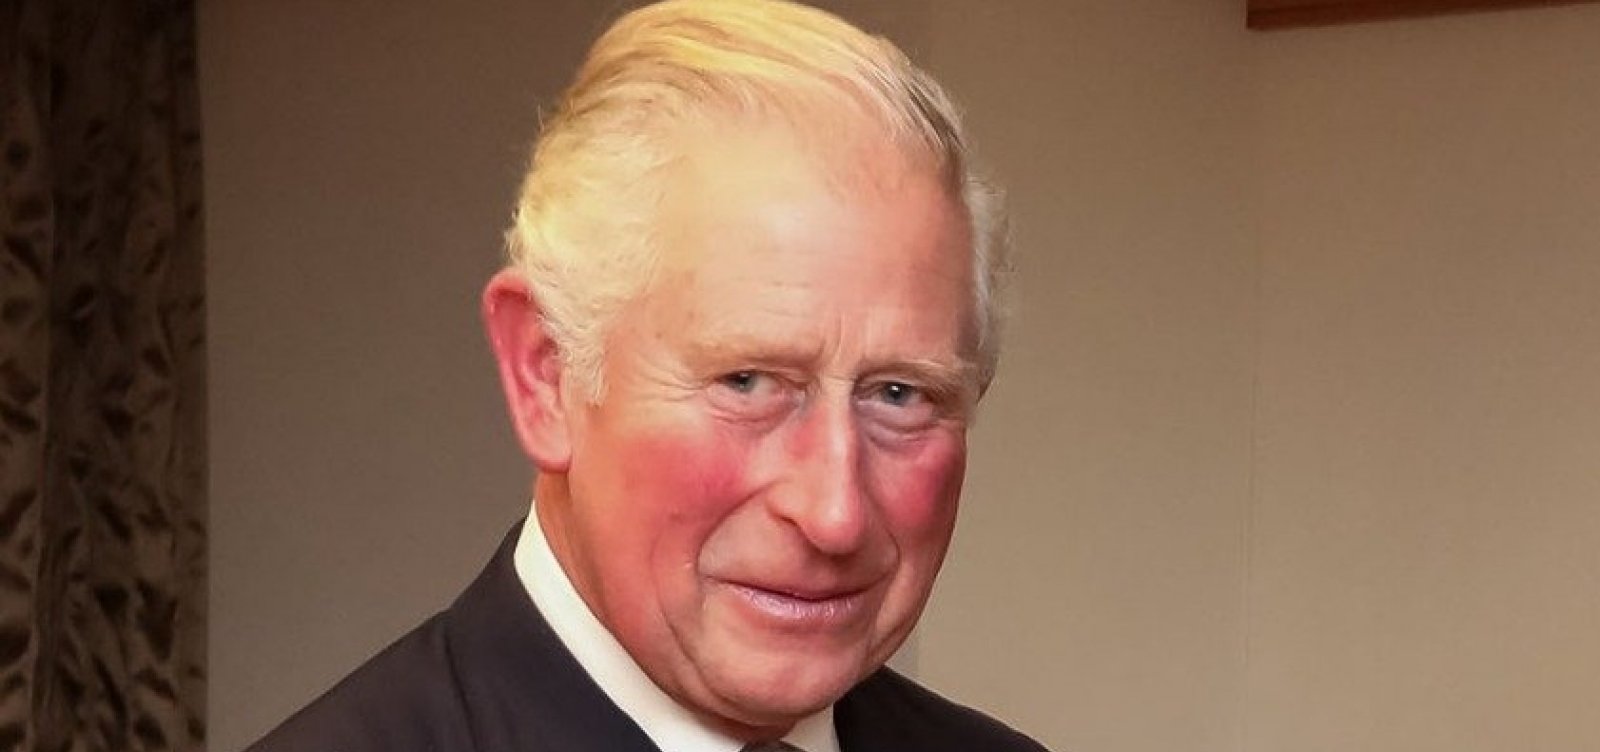 Príncipe Charles, de 71 anos, é diagnosticado com coronavírus